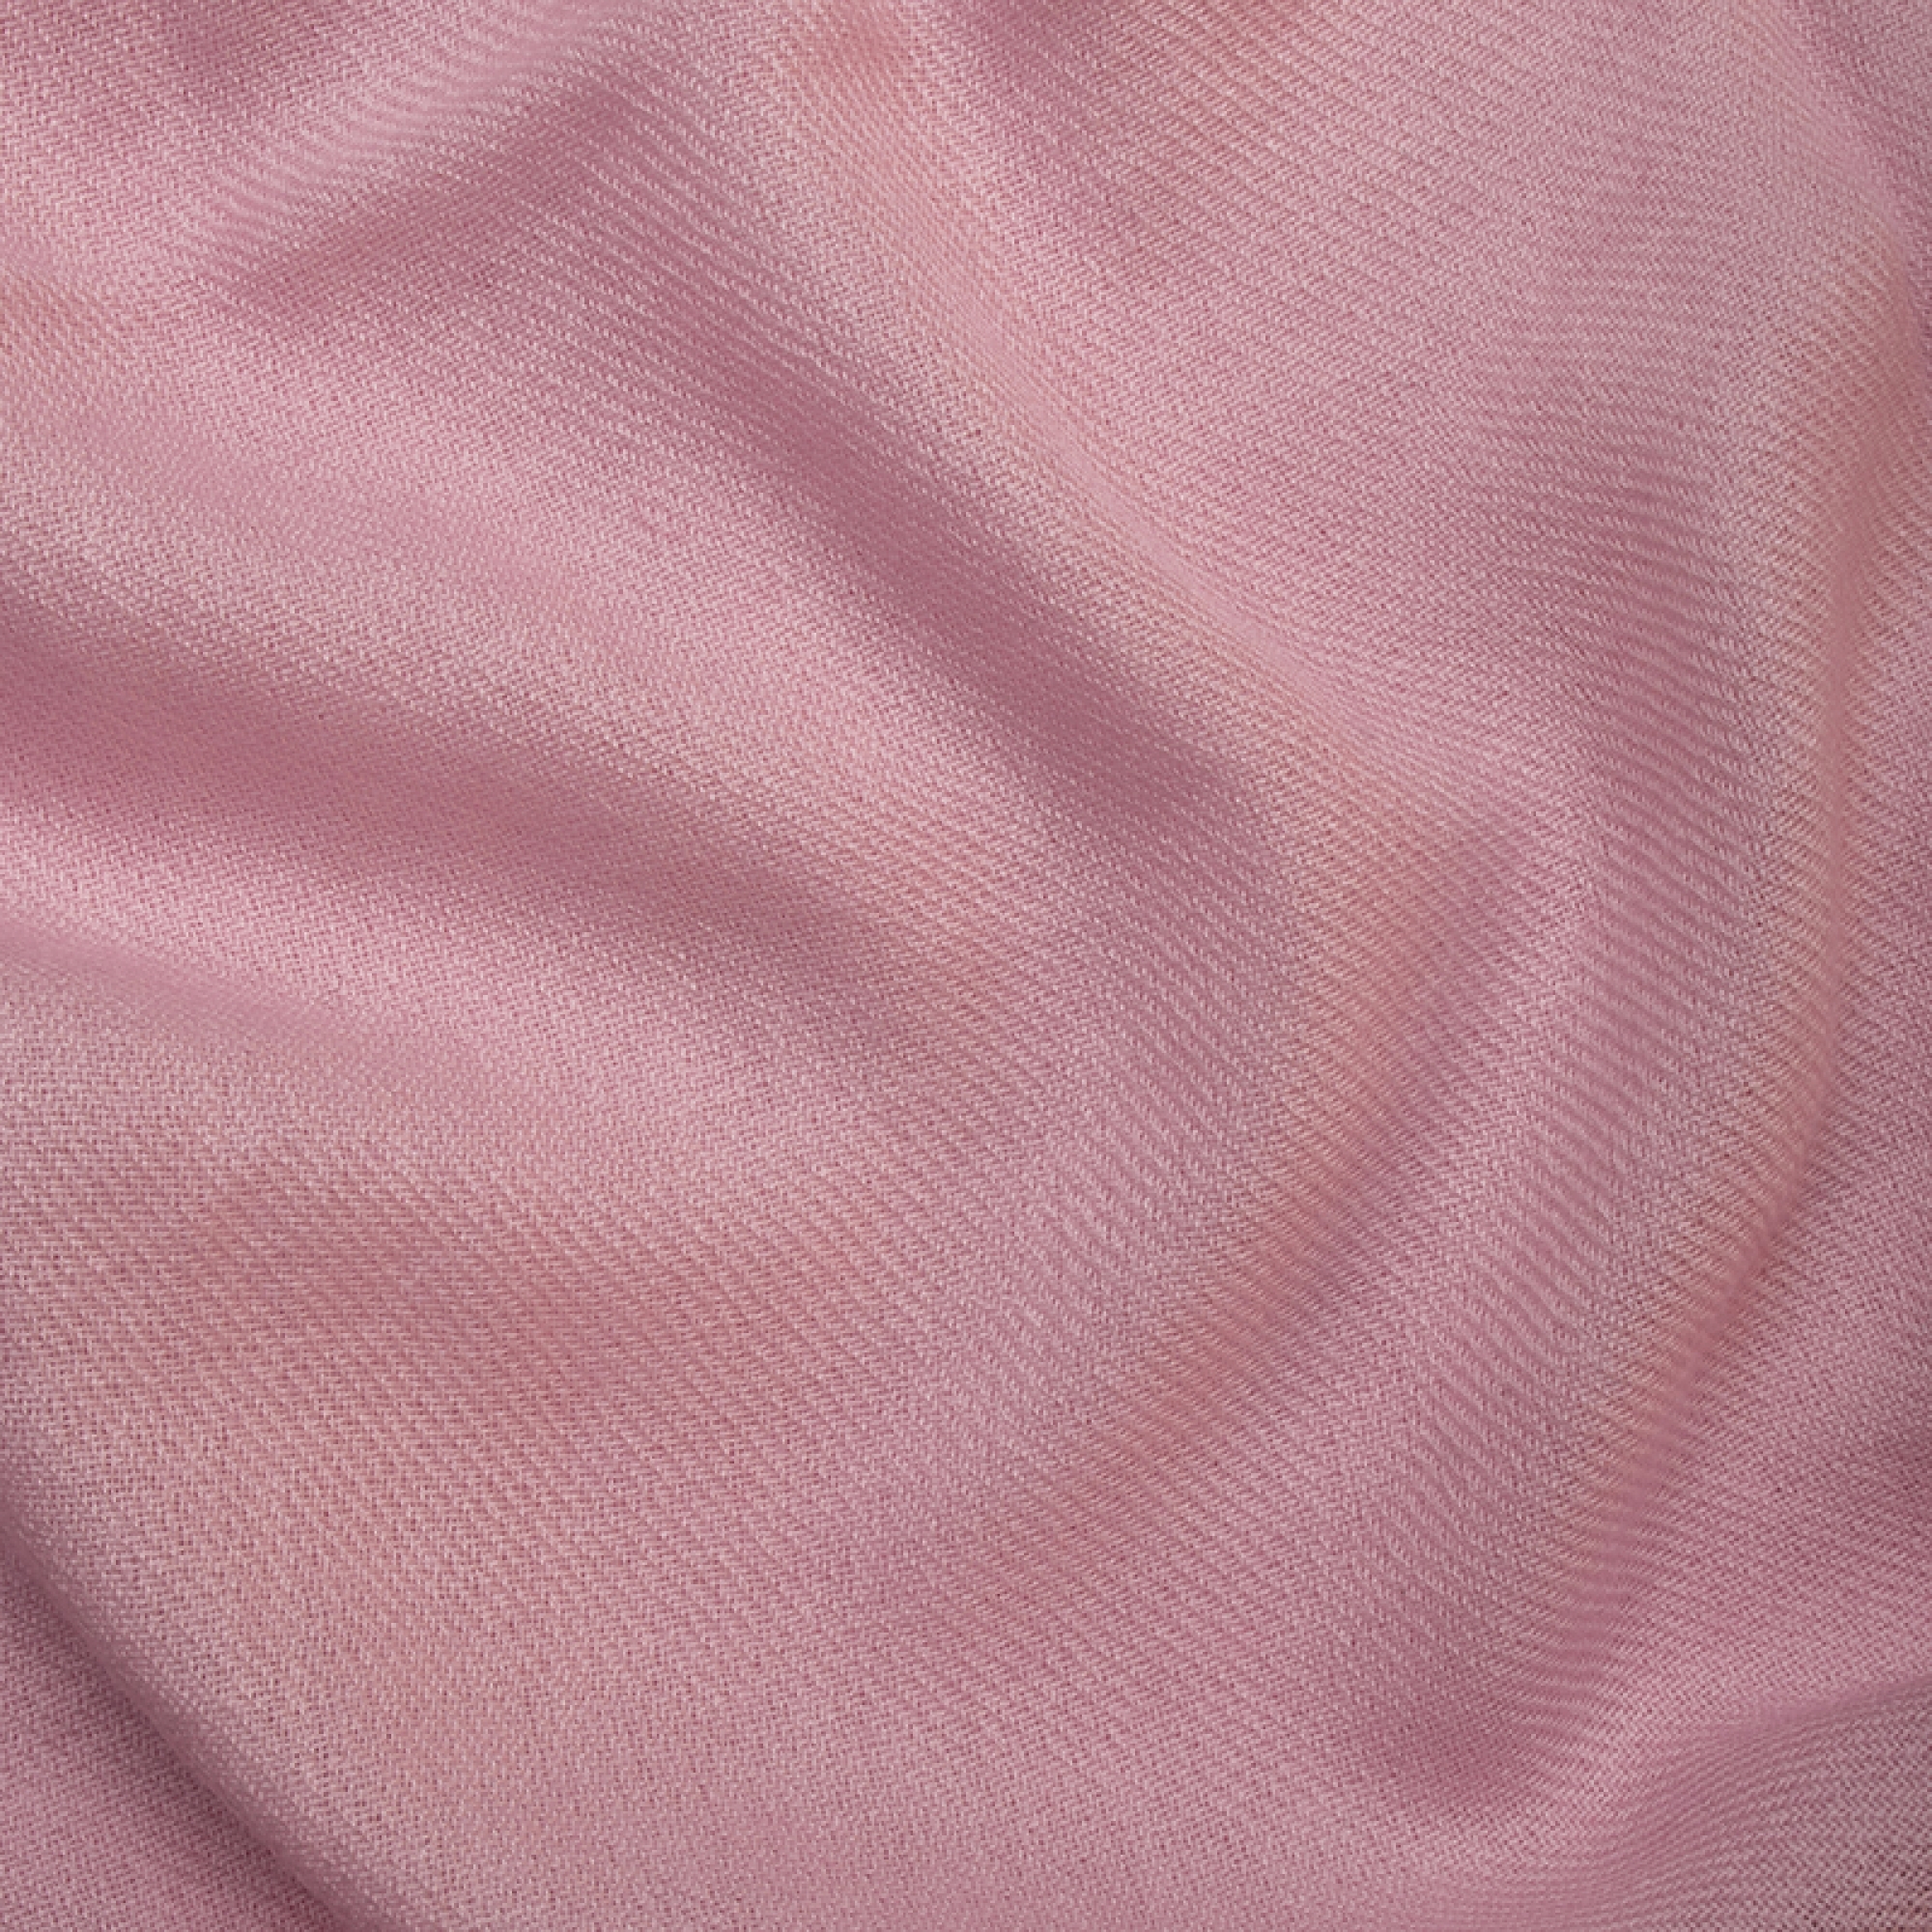 Cashmere accessori plaid frisbi 147 x 203 rosa pallido 147 x 203 cm